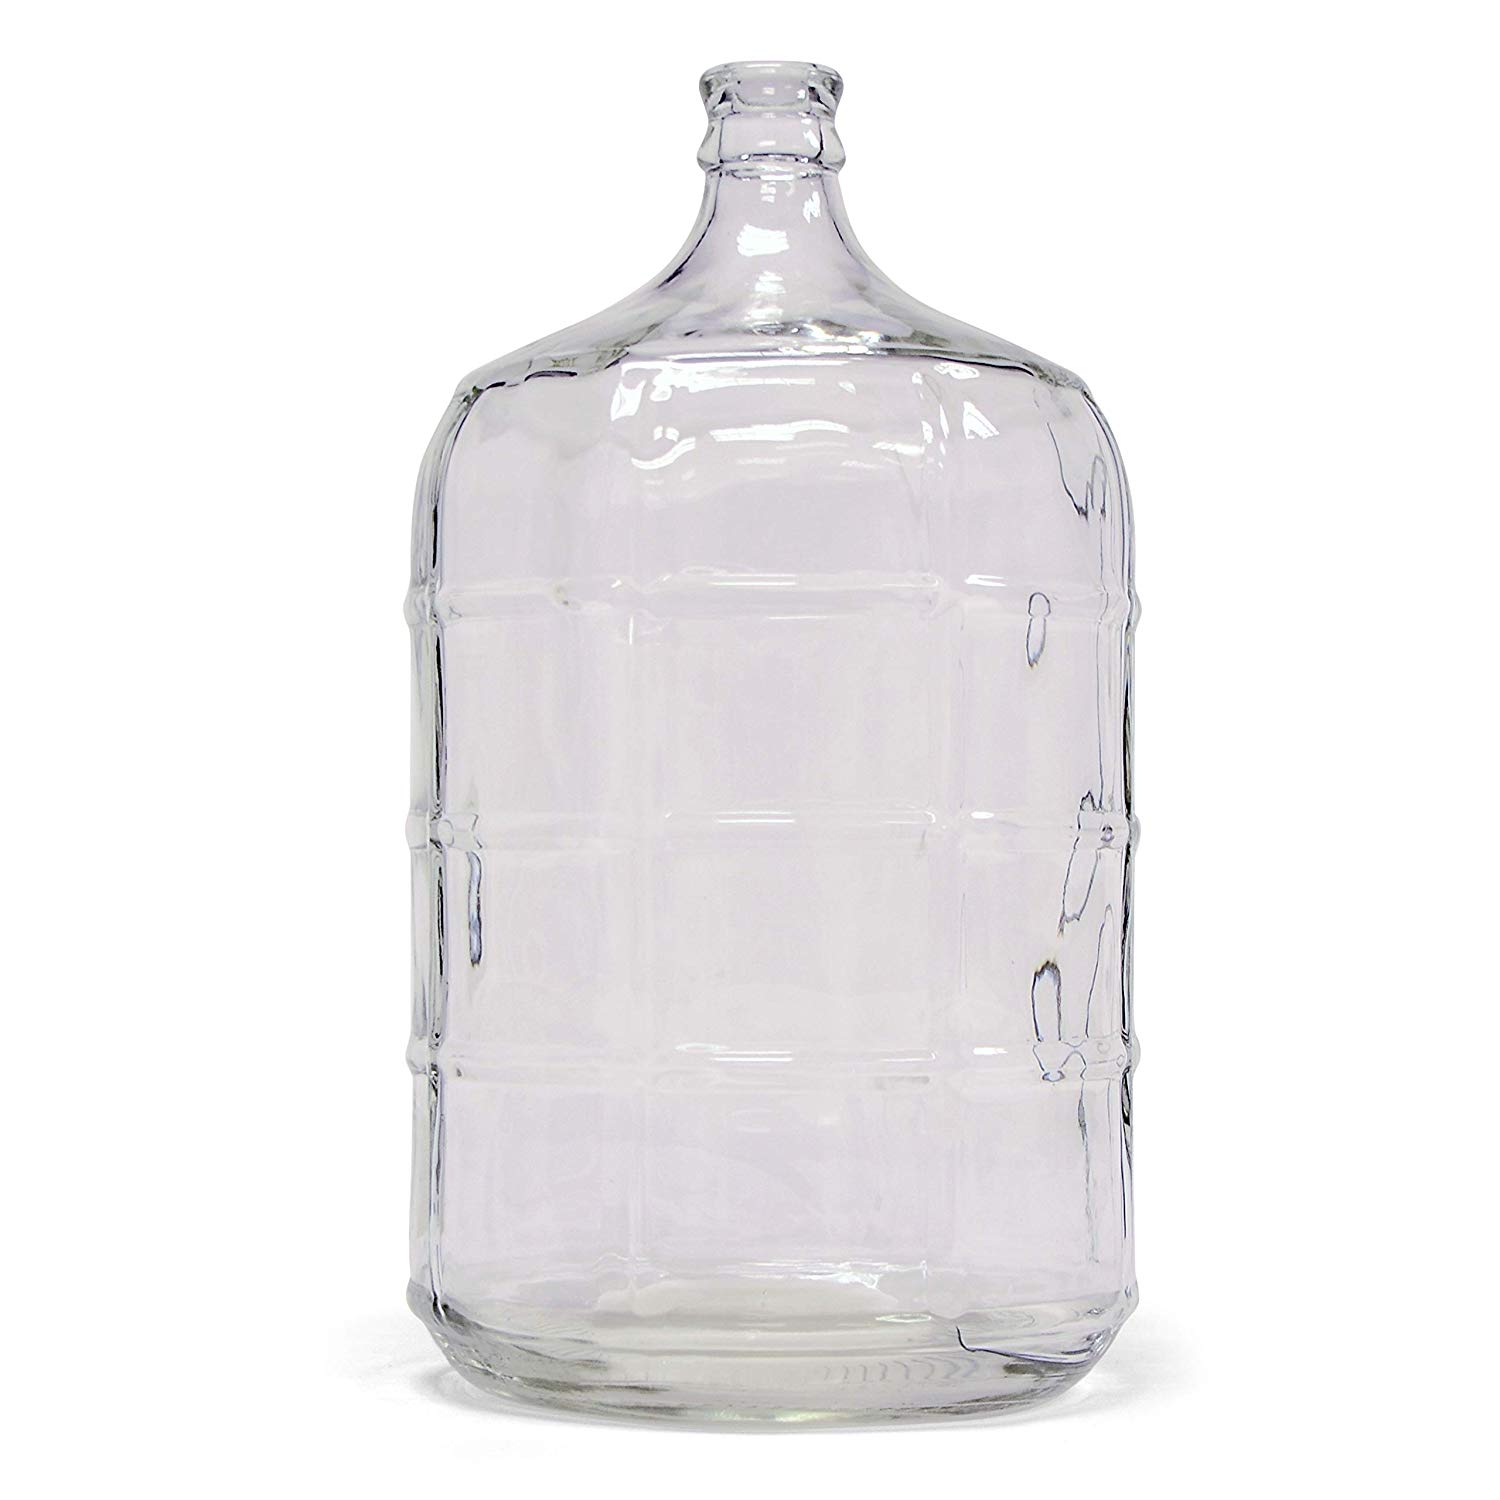 HomArt Glass Water Jug - 5 Gallon